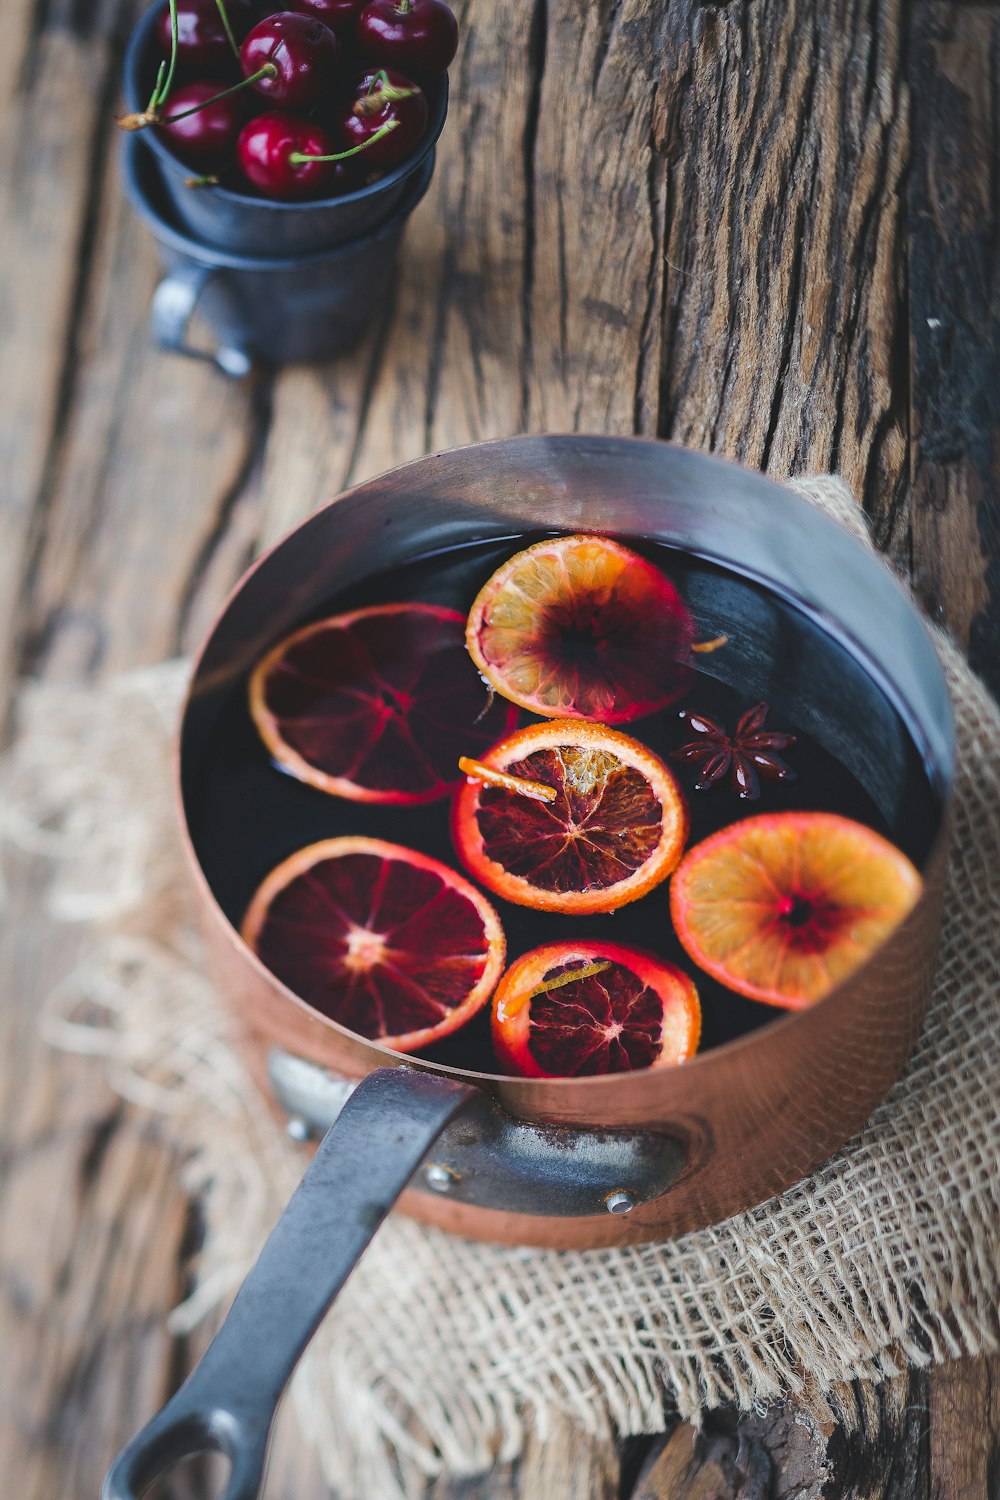 茶色の調理鍋にスライスしたオレンジ色の果物のクローズアップ写真